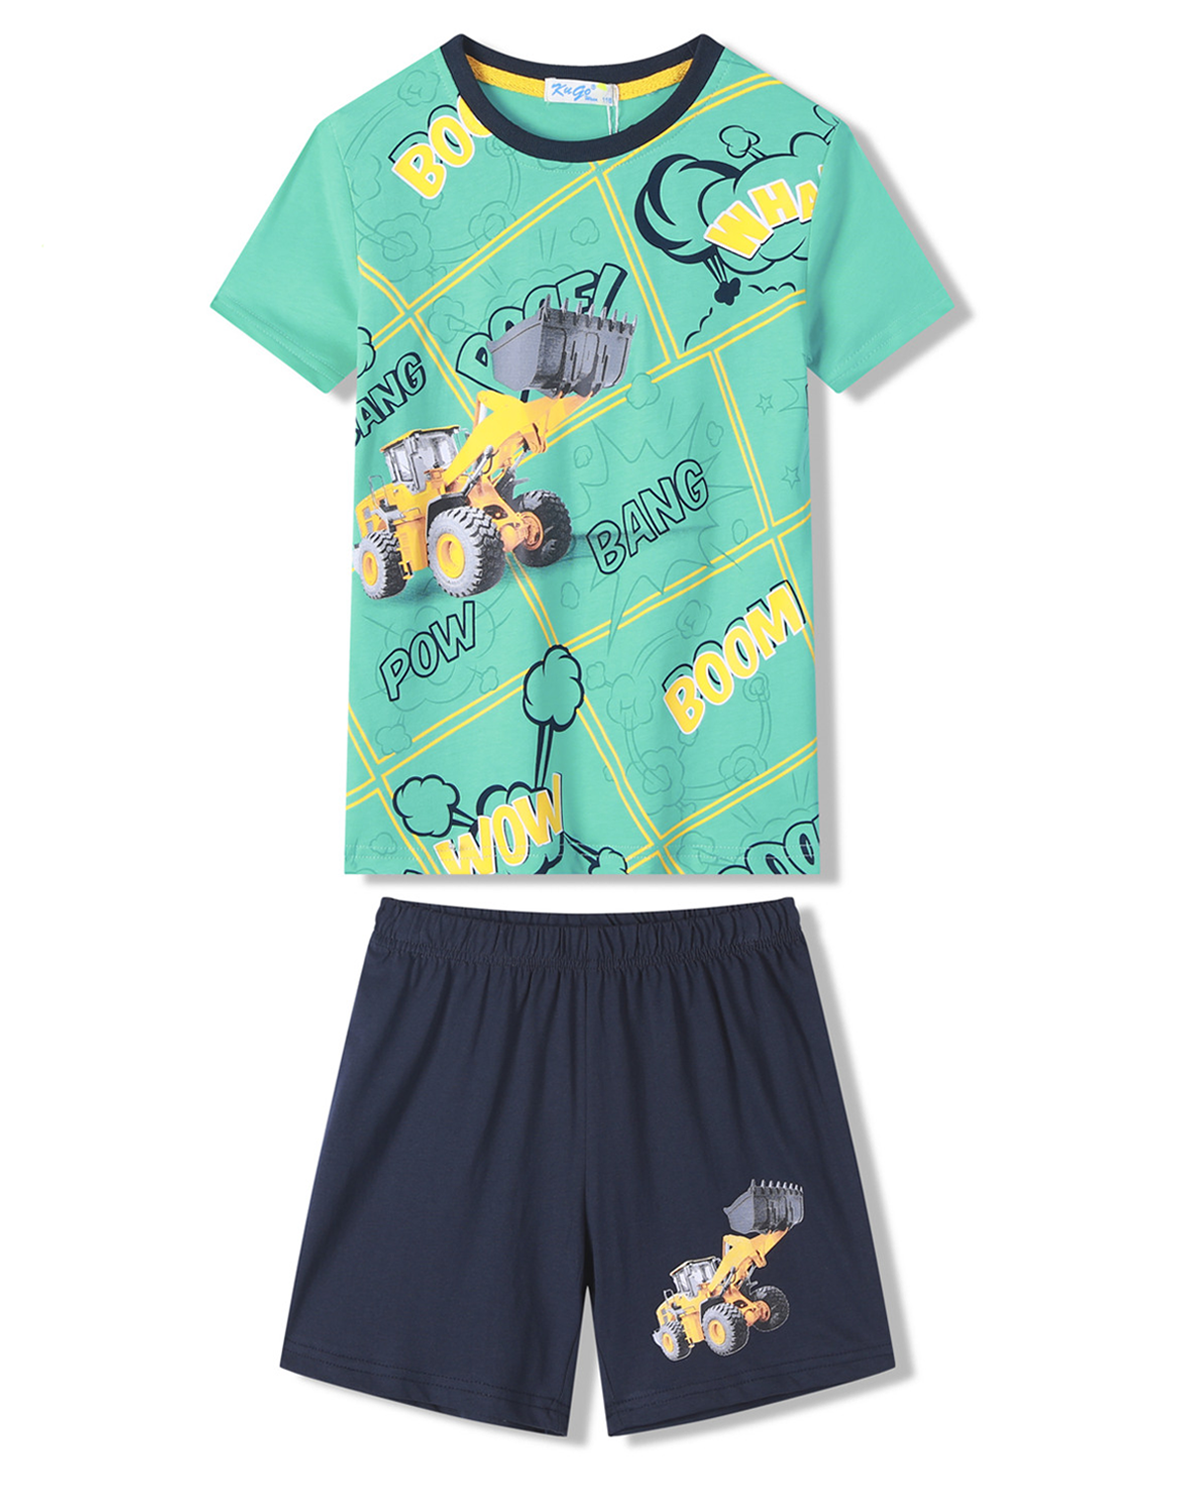 Chlapecké pyžamo - KUGO WT7310, zelinkavá Barva: Zelinkavá, Velikost: 98